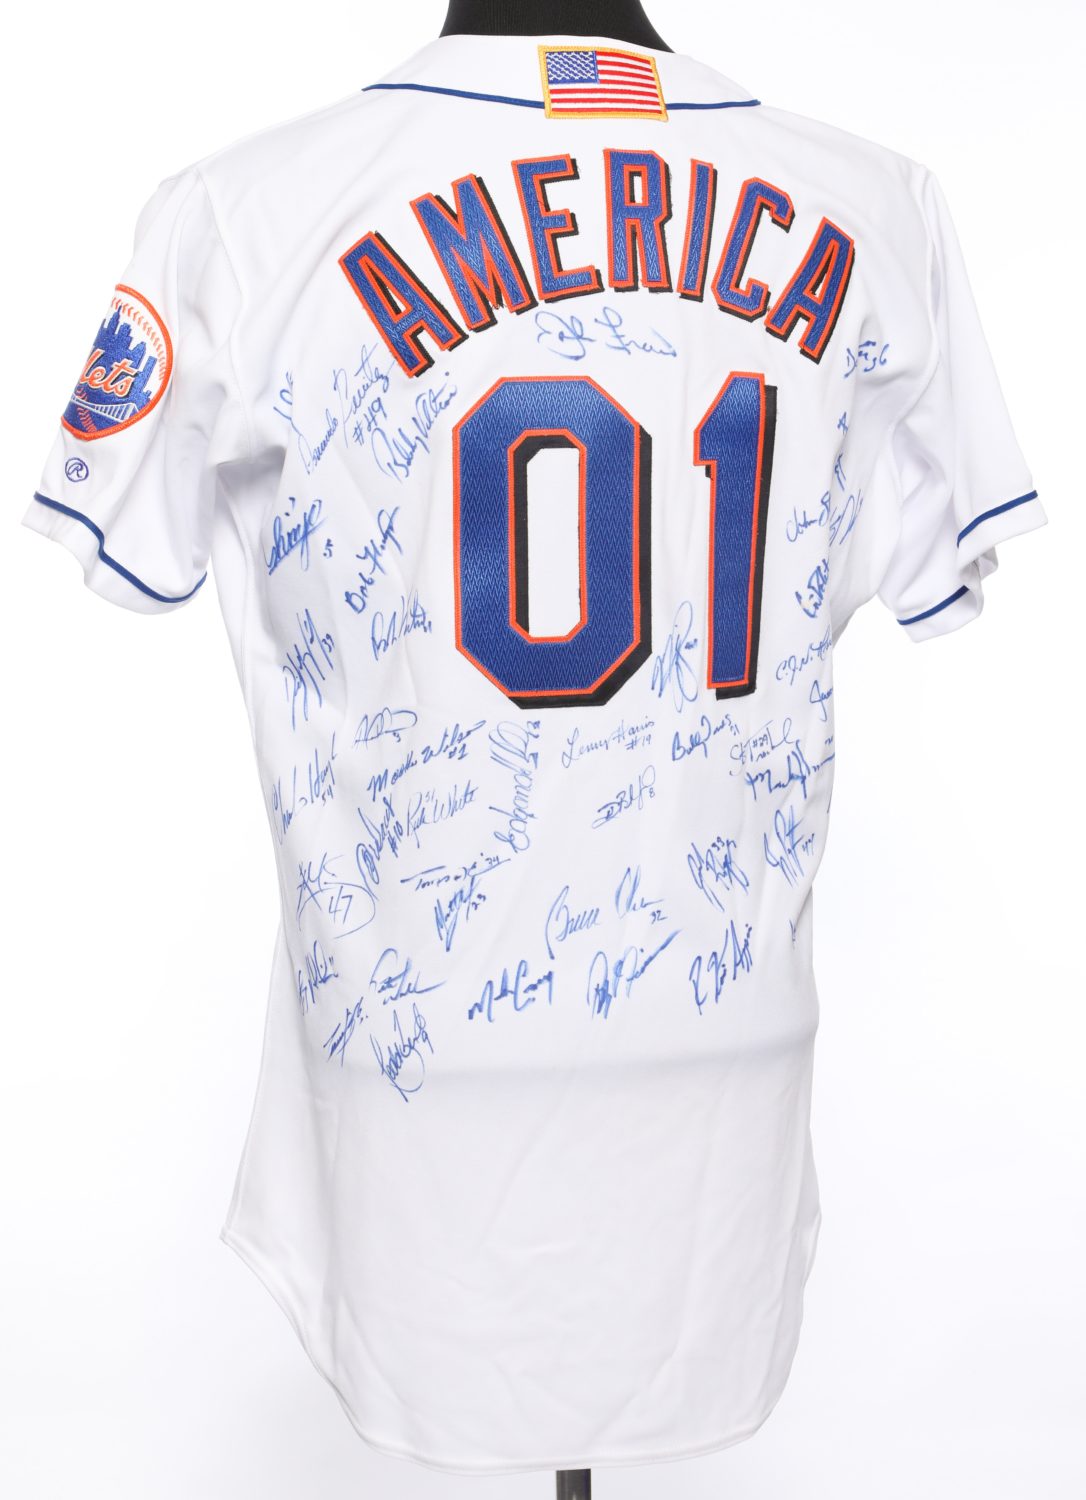 Autographed Mets 9/11 Memorial Jersey